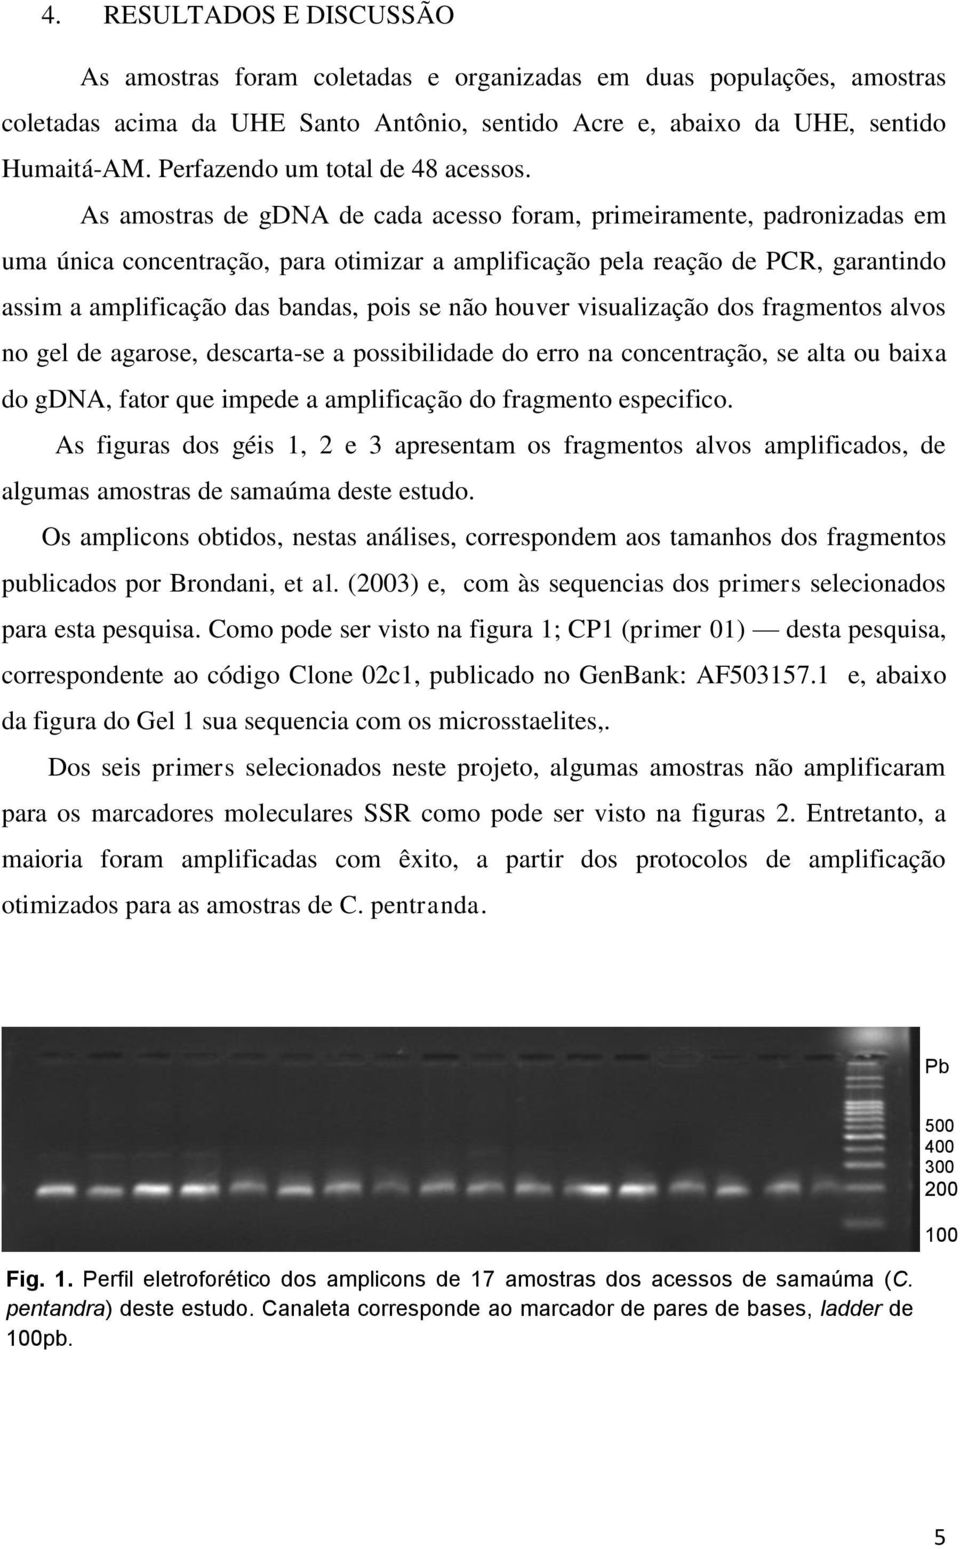 As amostras de gdna de cada acesso foram, primeiramente, padronizadas em uma única concentração, para otimizar a amplificação pela reação de PCR, garantindo assim a amplificação das bandas, pois se